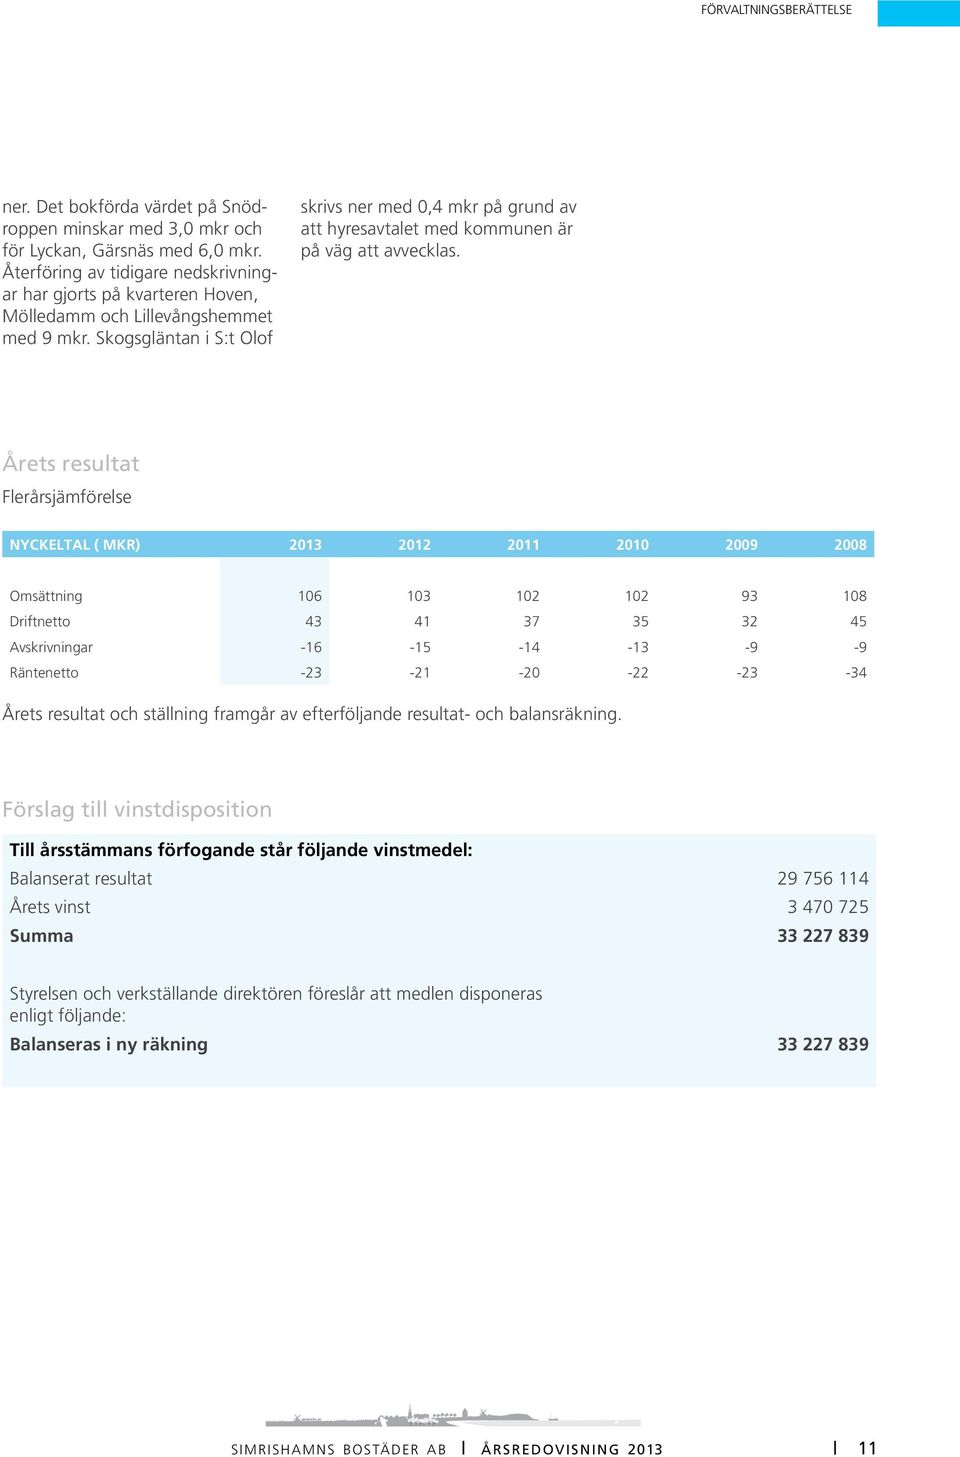 Skogsgläntan i S:t Olof skrivs ner med 0,4 mkr på grund av att hyresavtalet med kommunen är på väg att avvecklas.